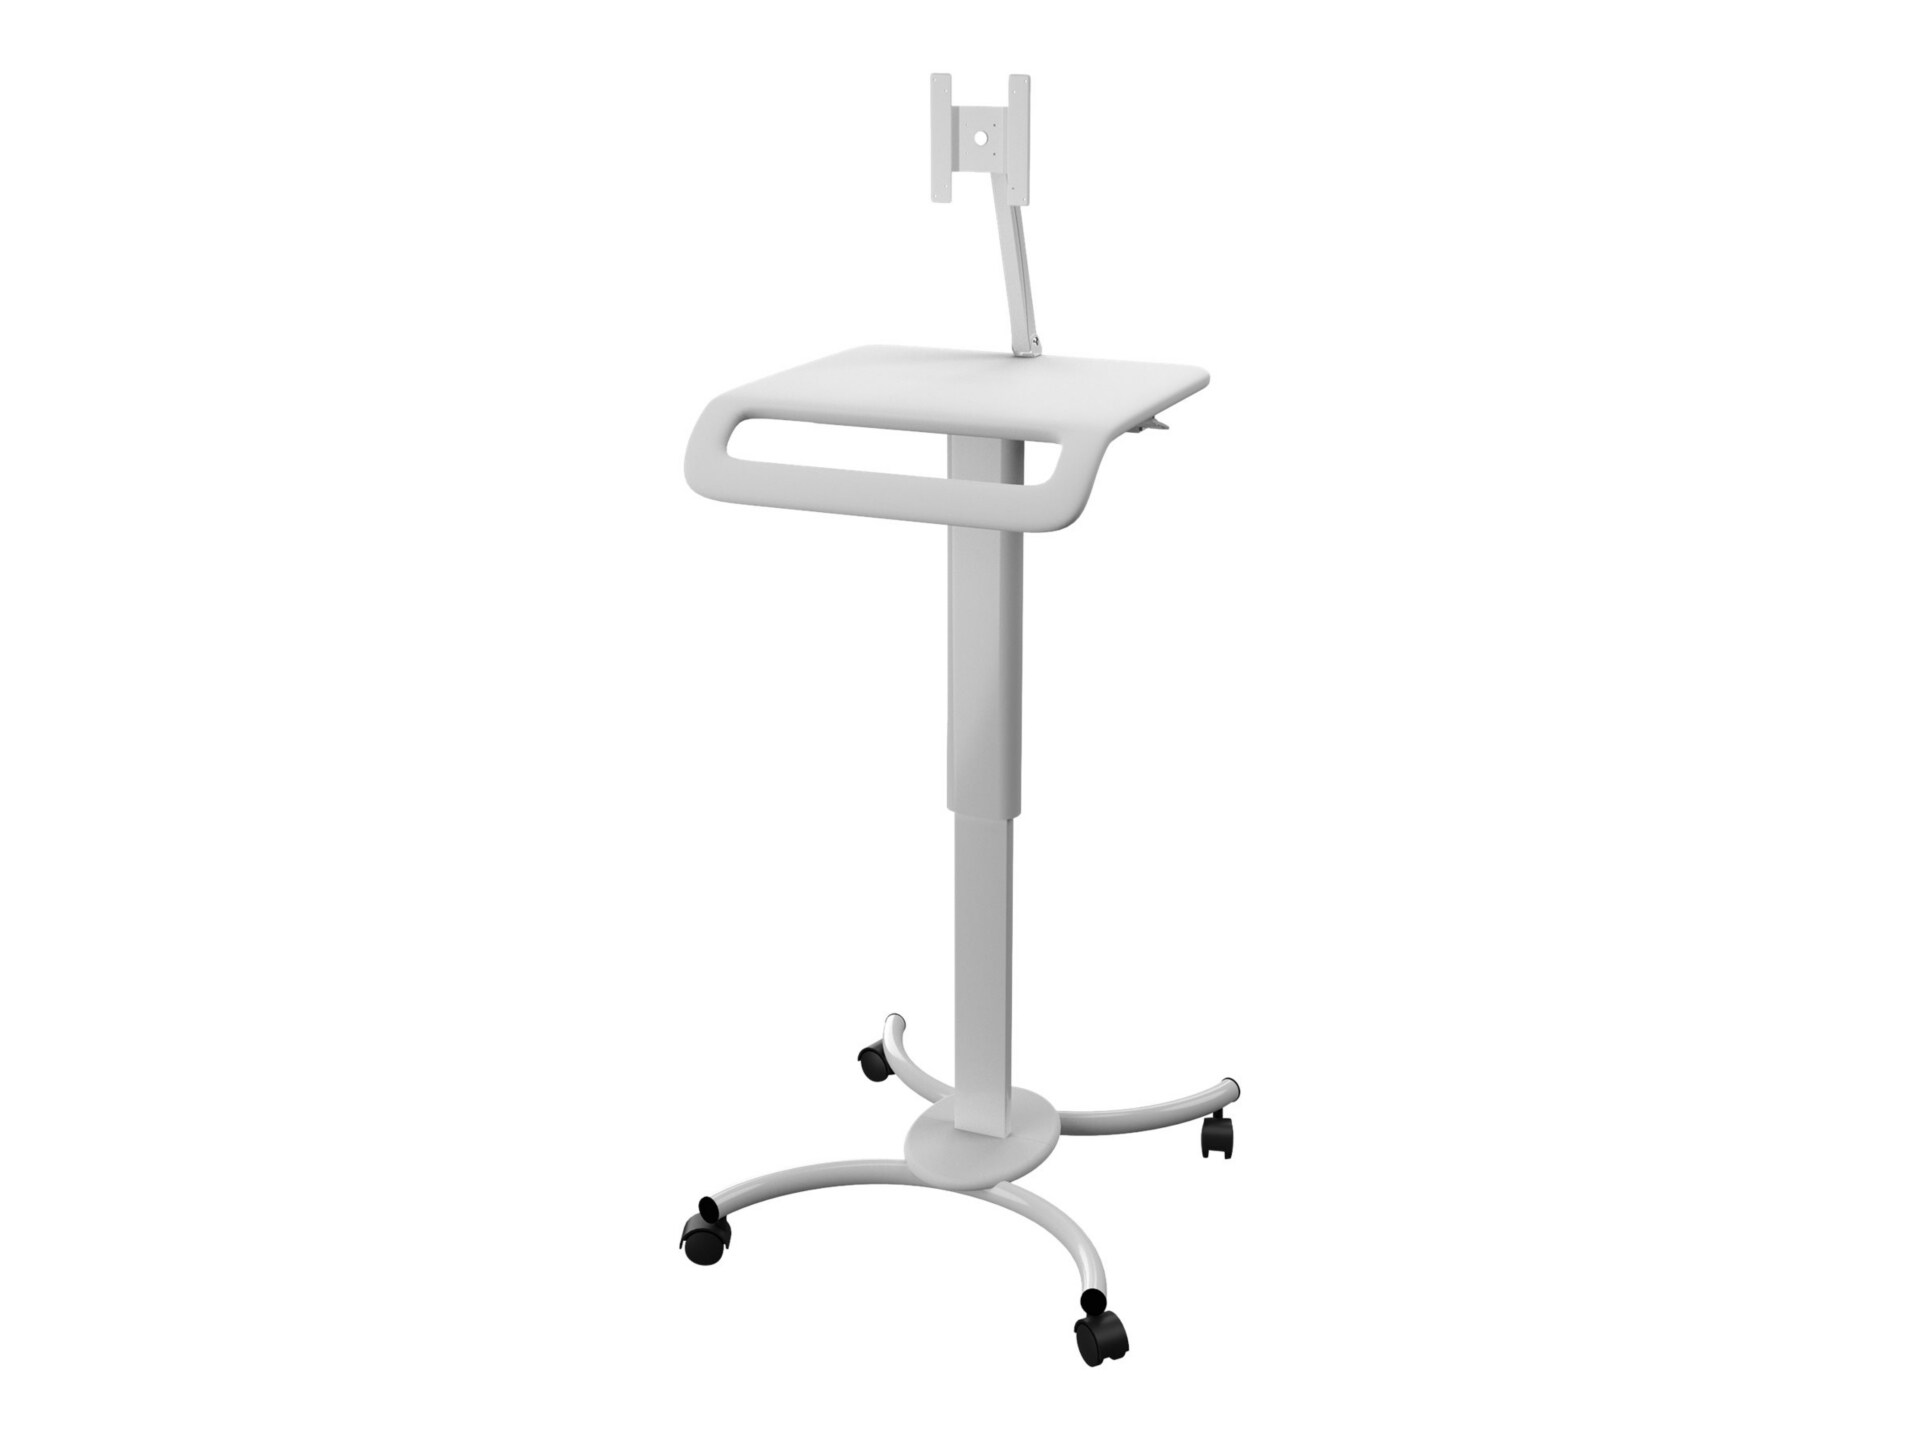 CTA Digital Height-Adjustable Rolling Medical Workstation Cart with VESA Plate